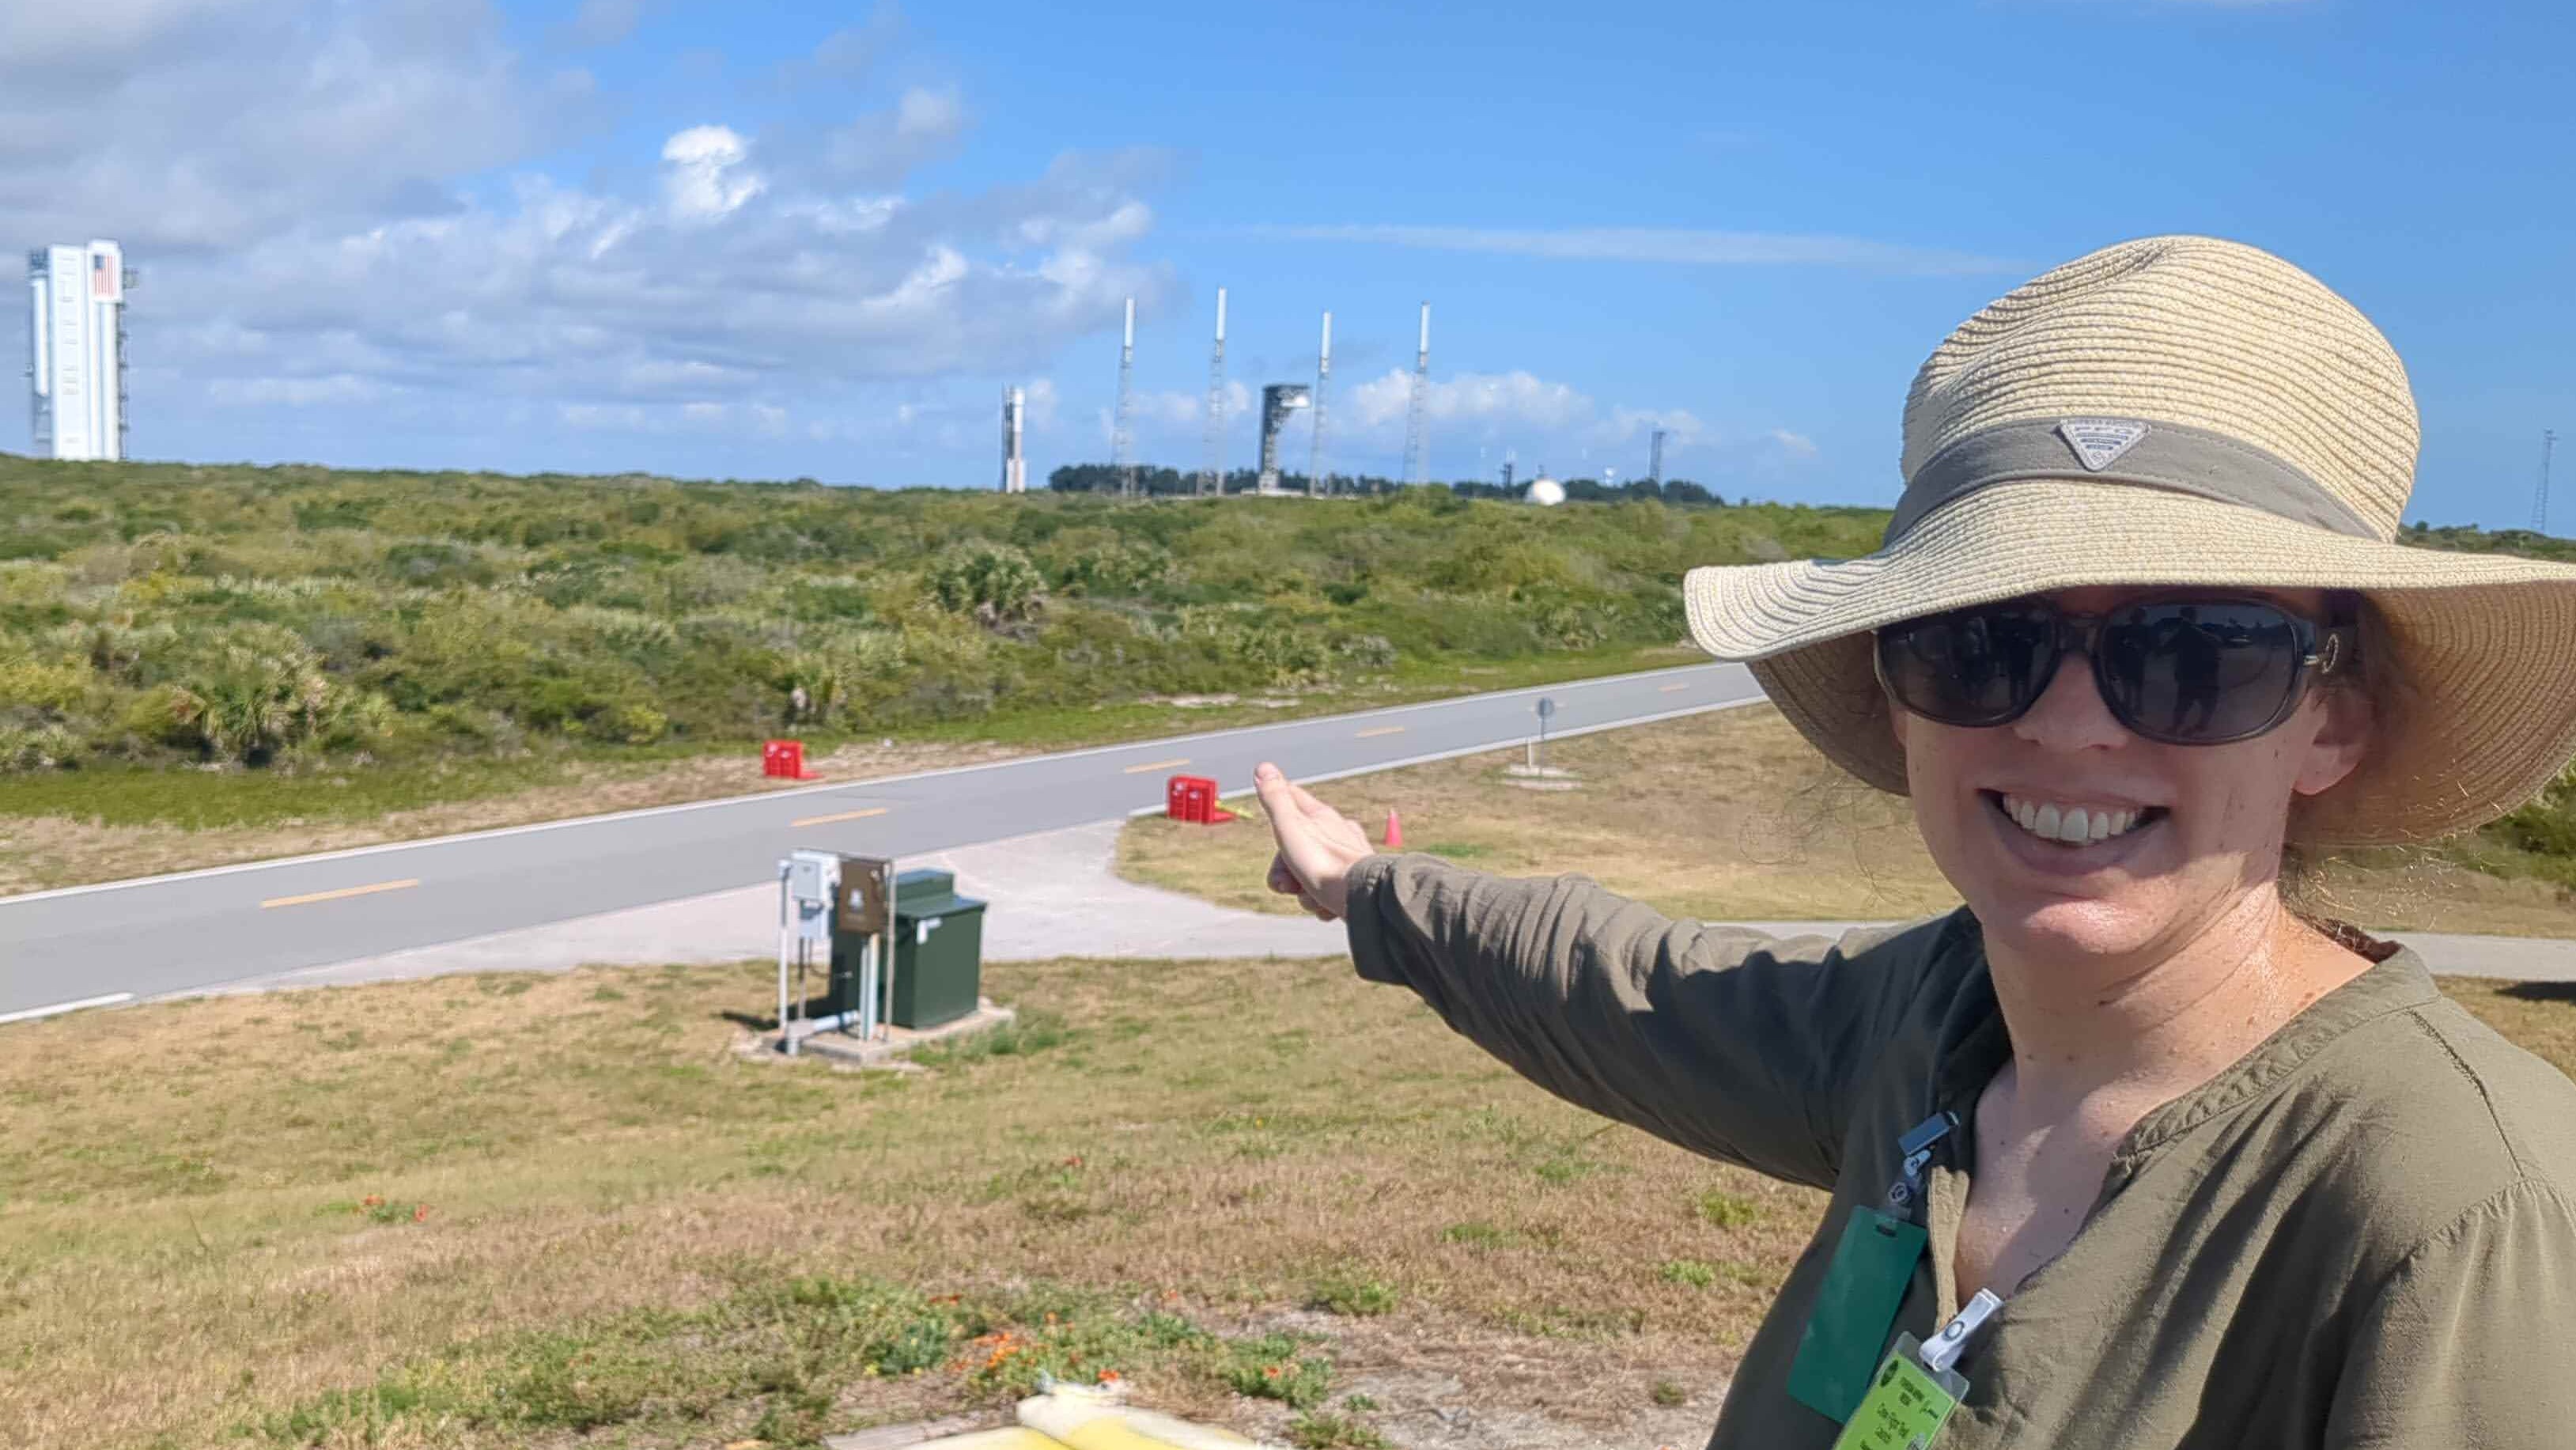 Mujer sonriente con un gran sombrero y gafas de sol.  Señala al otro lado de la carretera un cohete y una plataforma de lanzamiento distante al fondo.